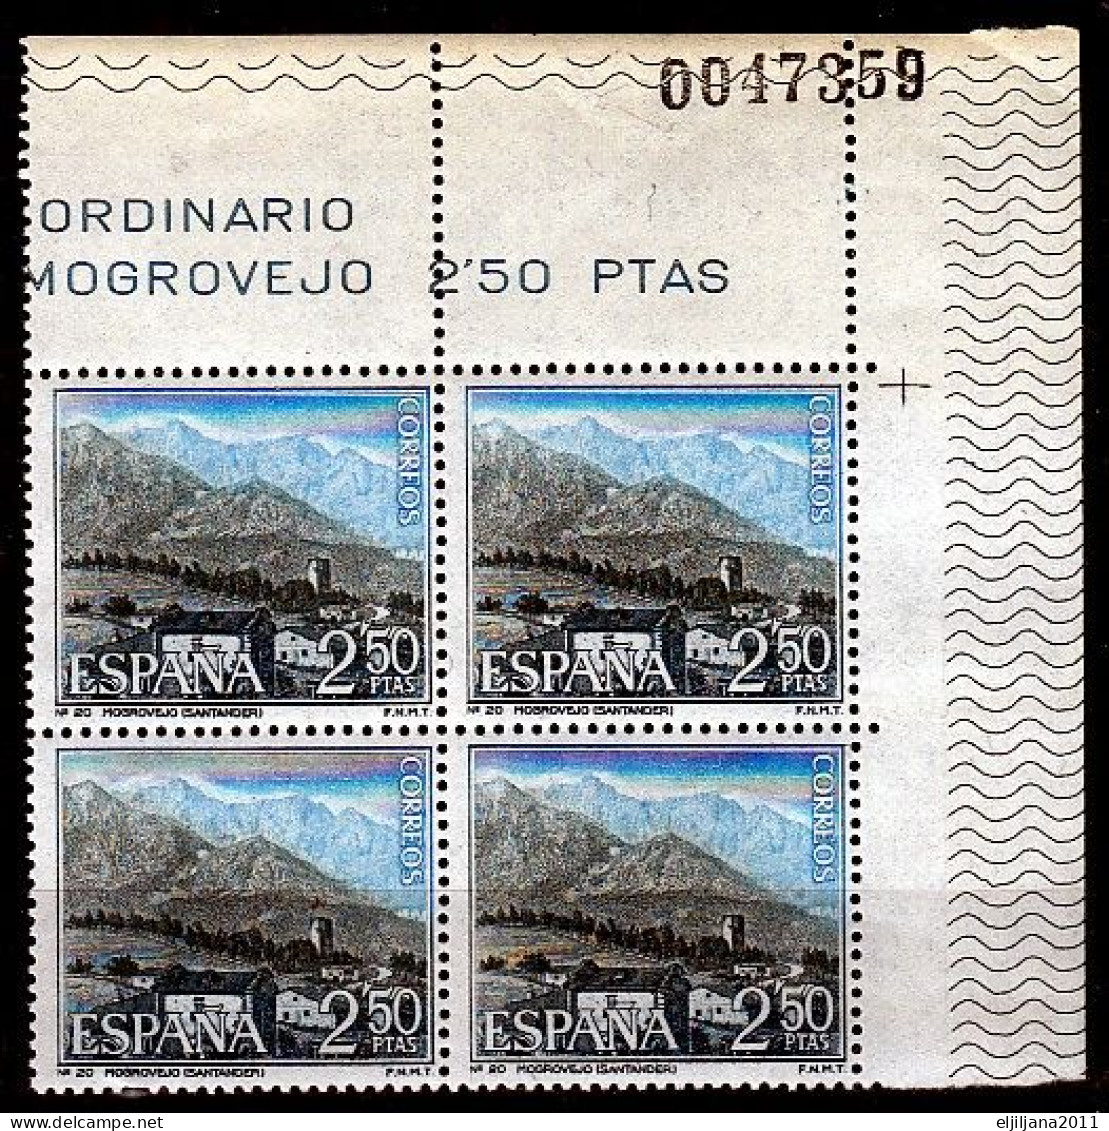 ⁕ SPAIN / ESPANA 1965 ⁕ Mogrovejo - Santander Mi.1589 ⁕ MNH Block Of 4 - Ongebruikt